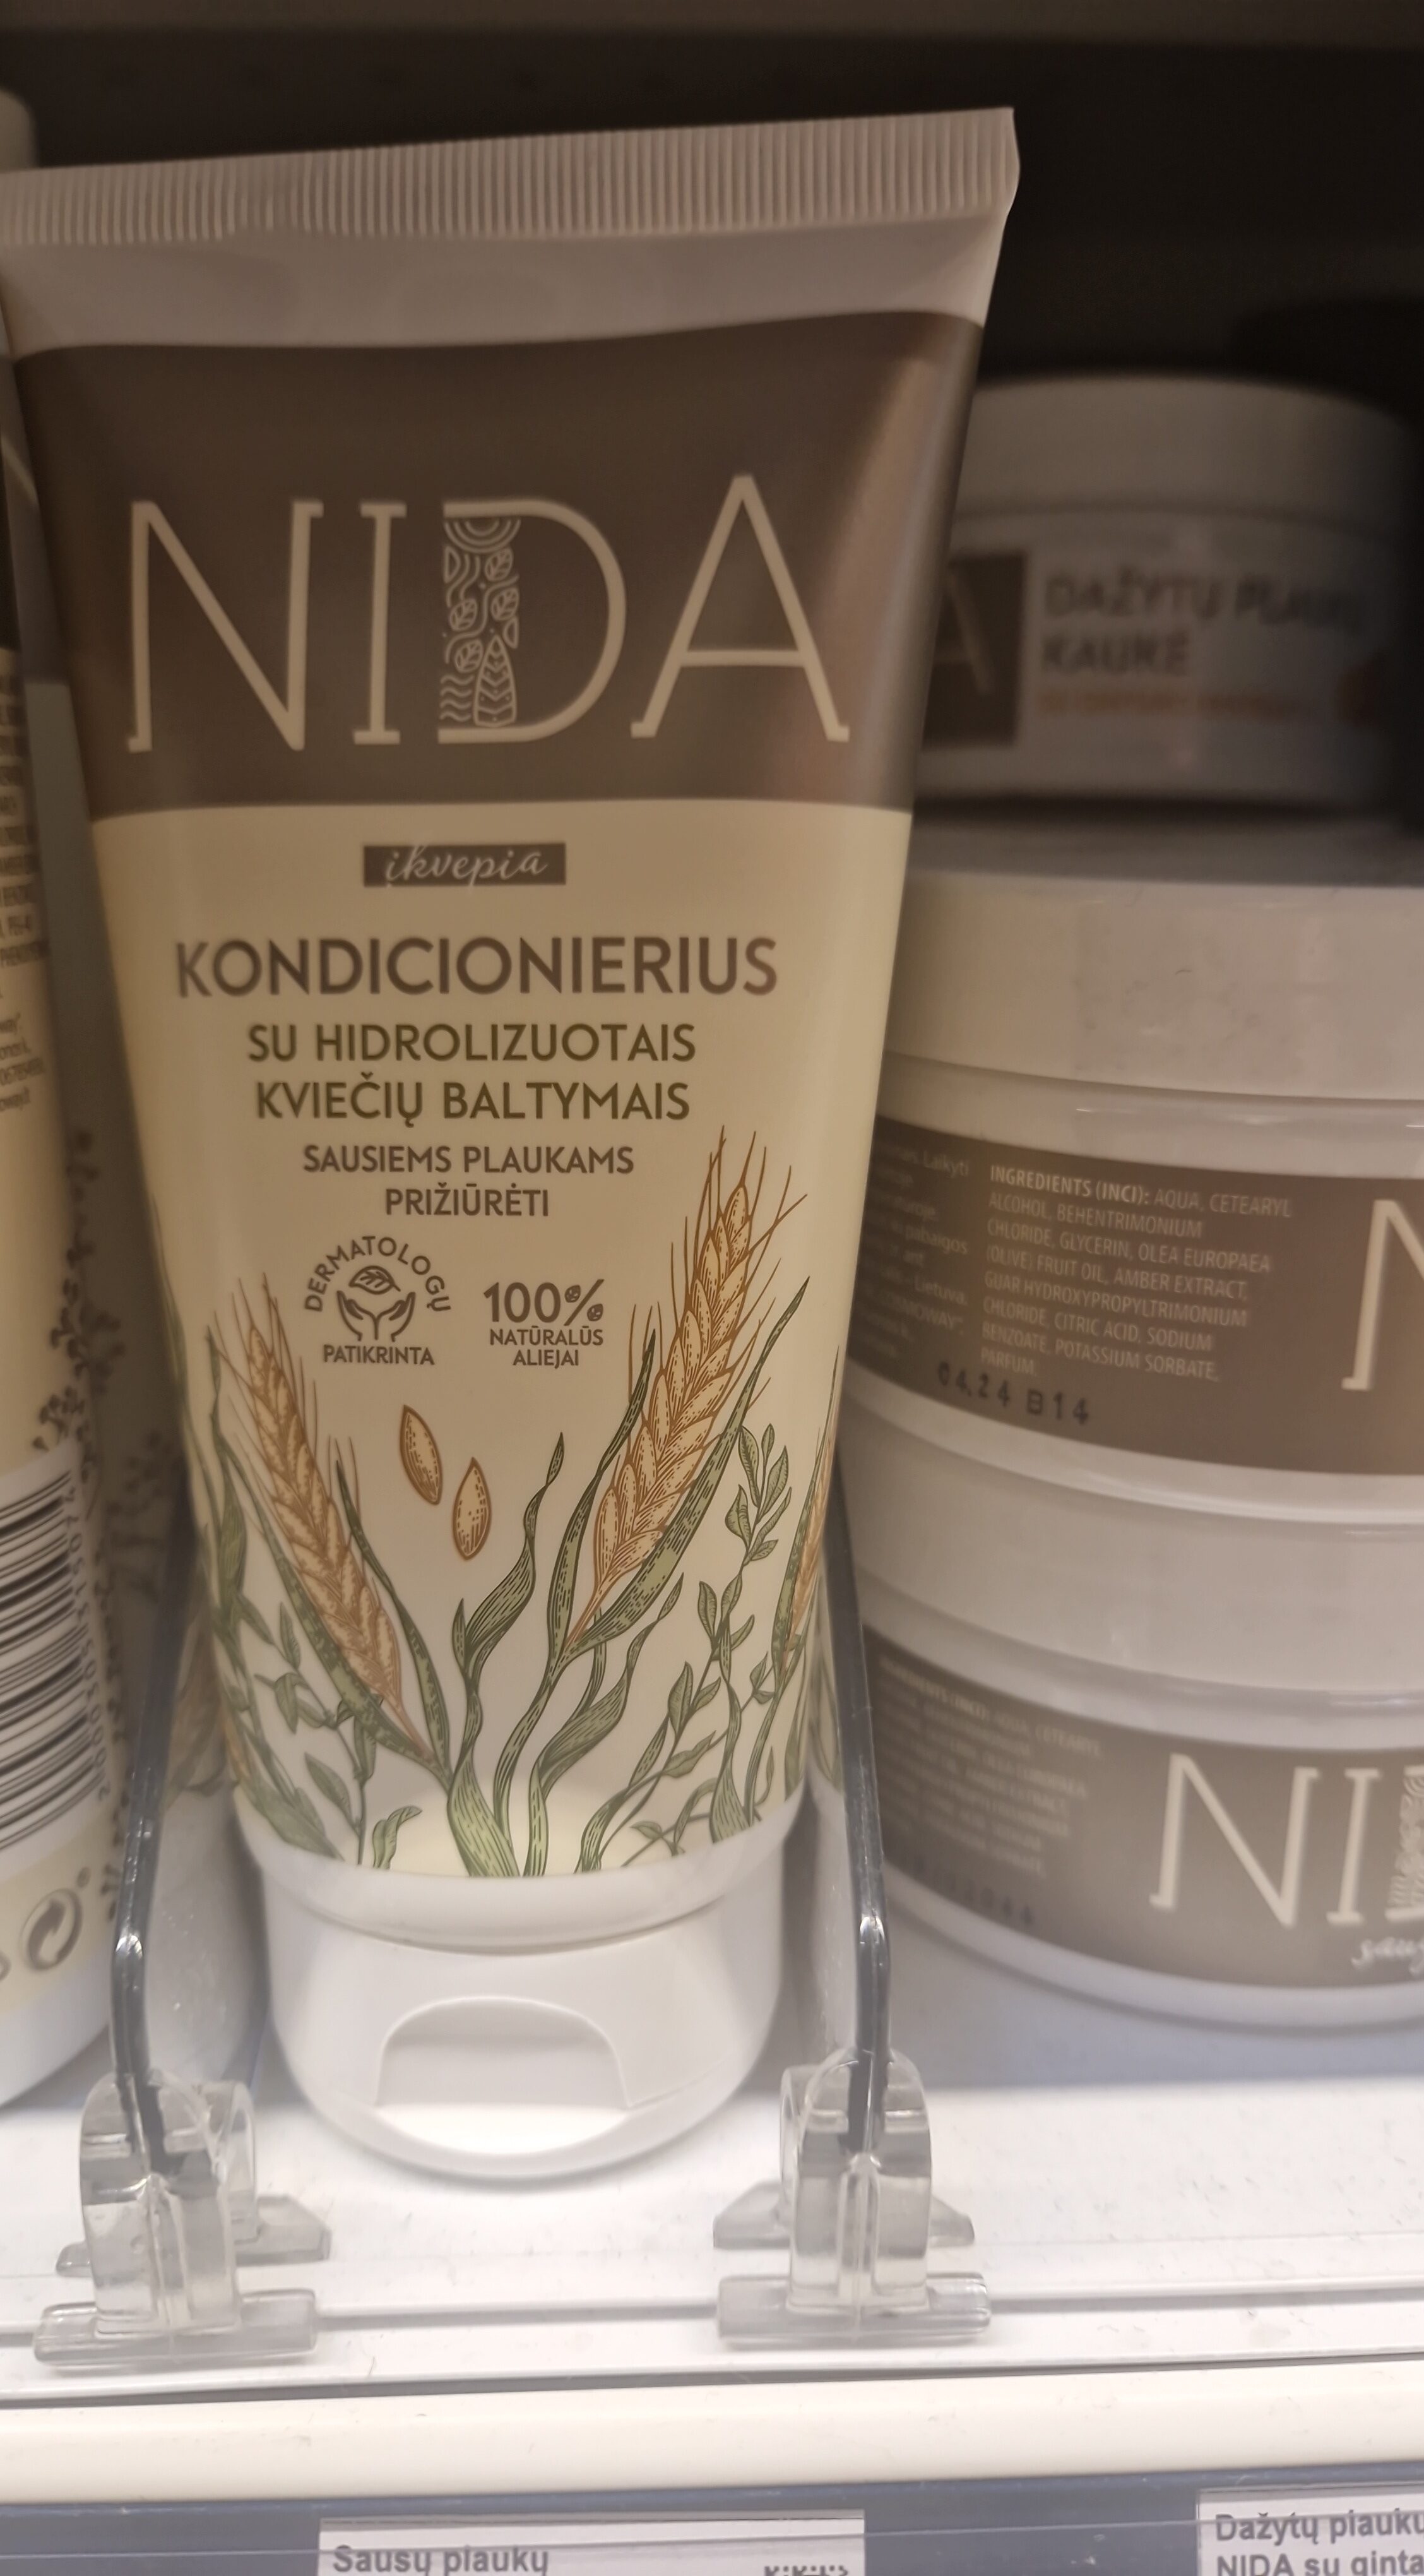 Sausų plaukų kondicionierius NIDA su kviečių baltymais - Продукт - lt